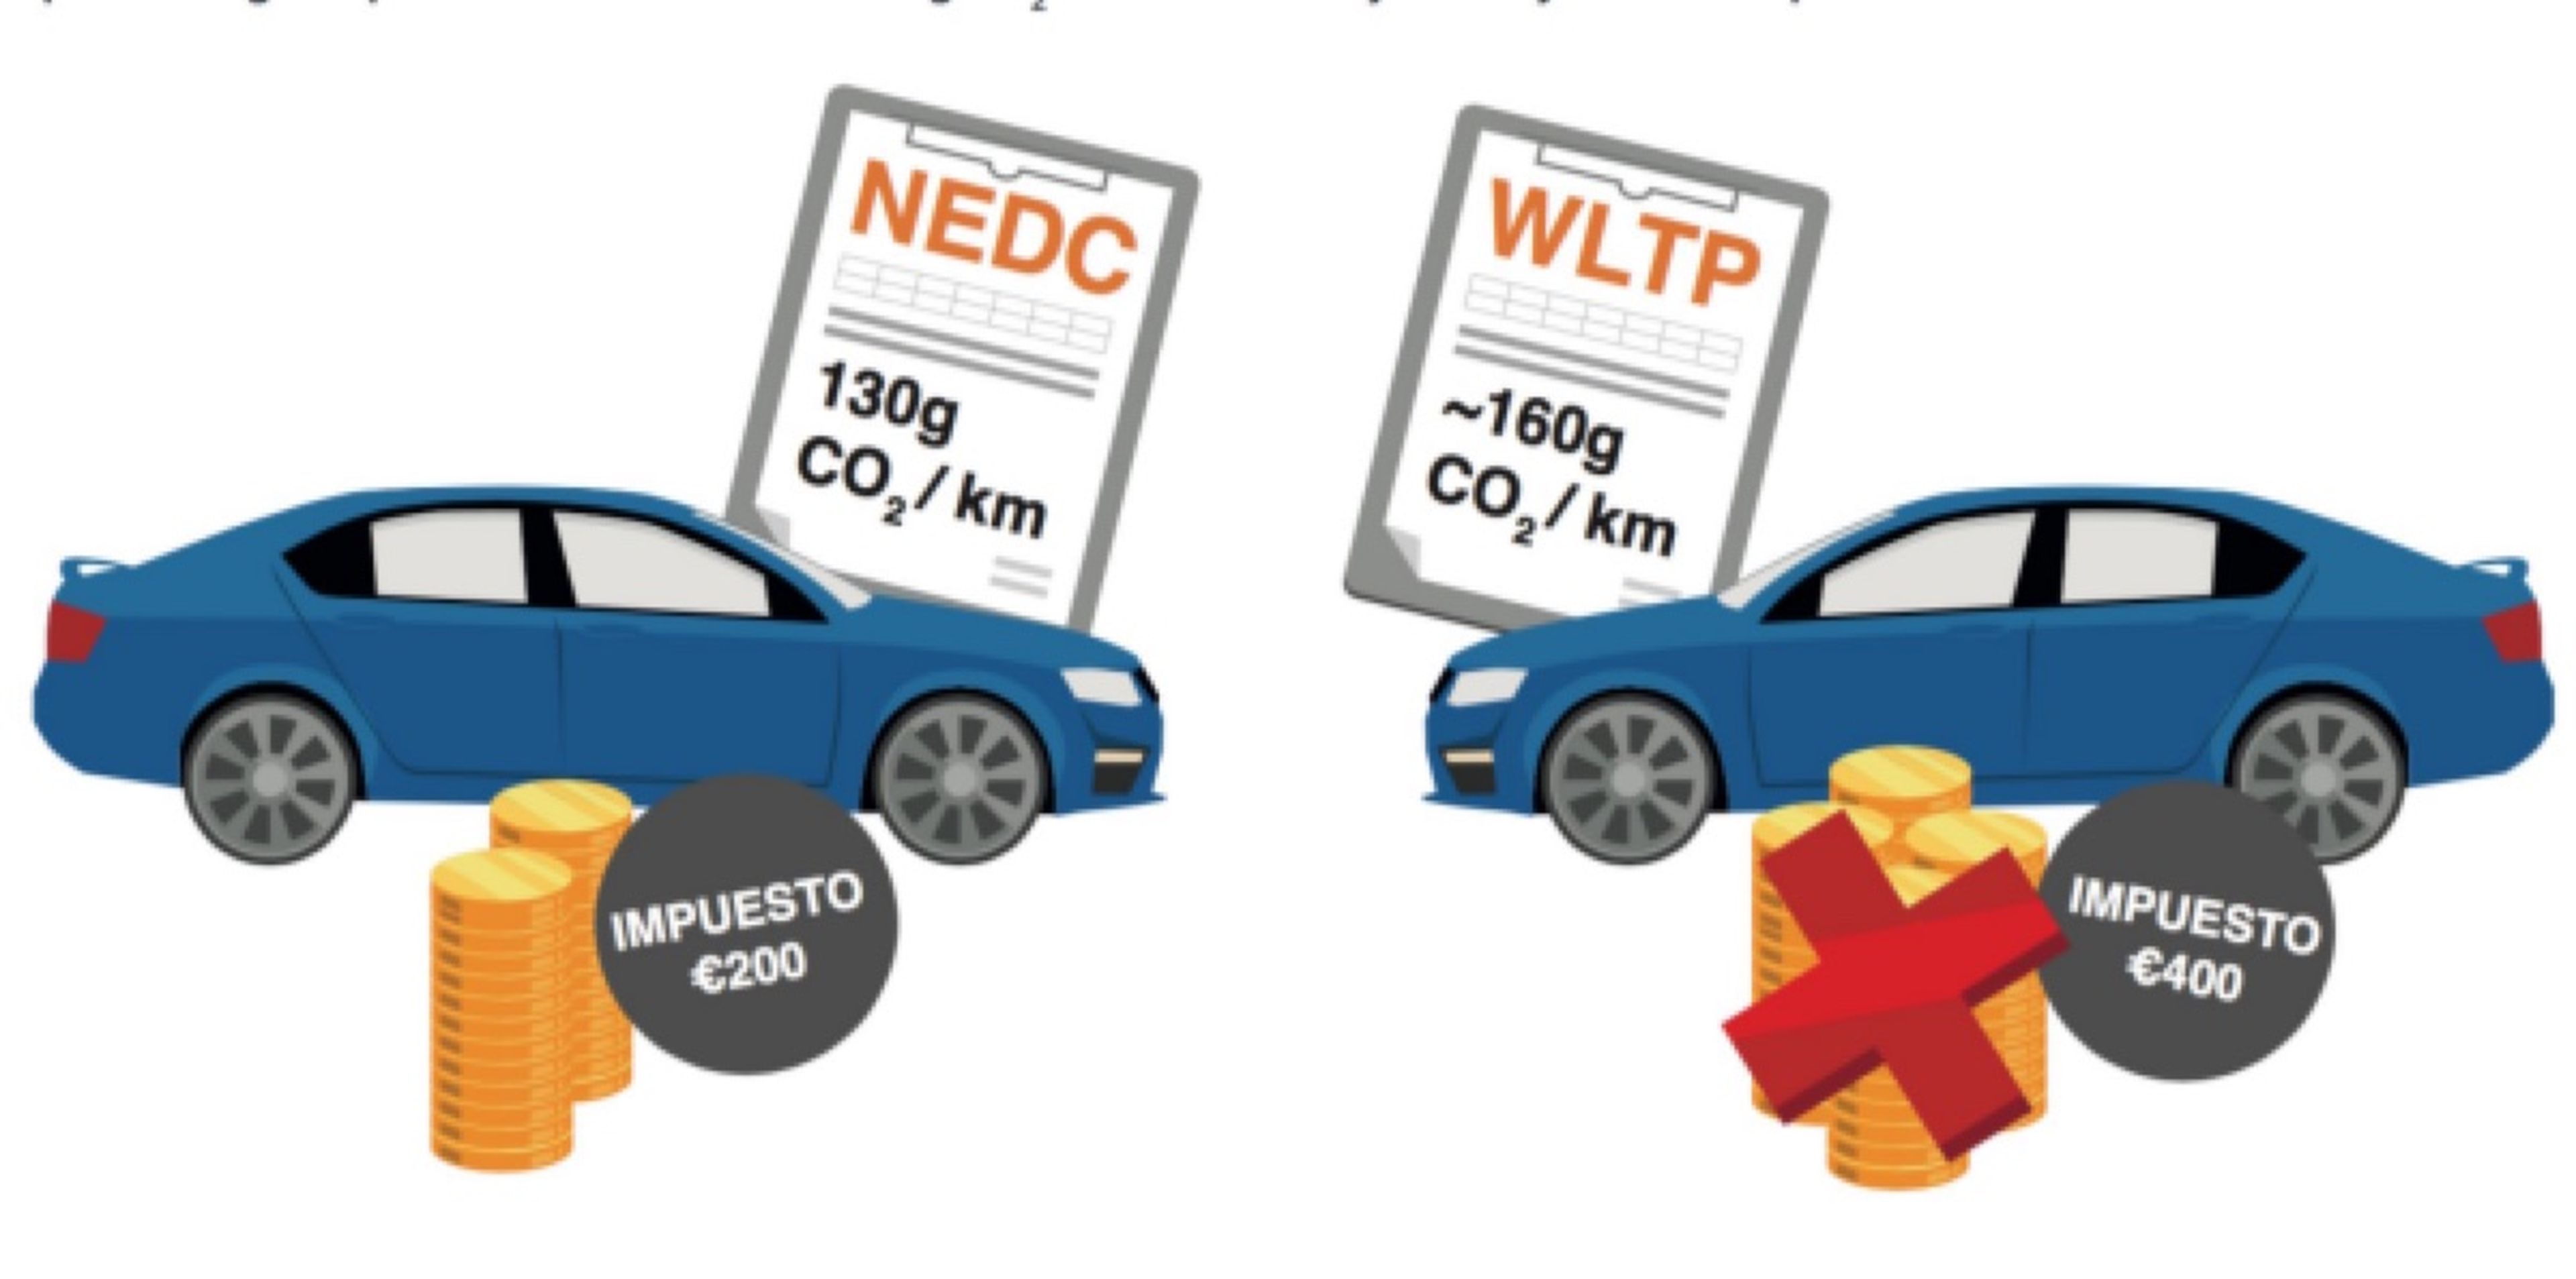 El WLTP puede hacer subir el precio de venta de los coches